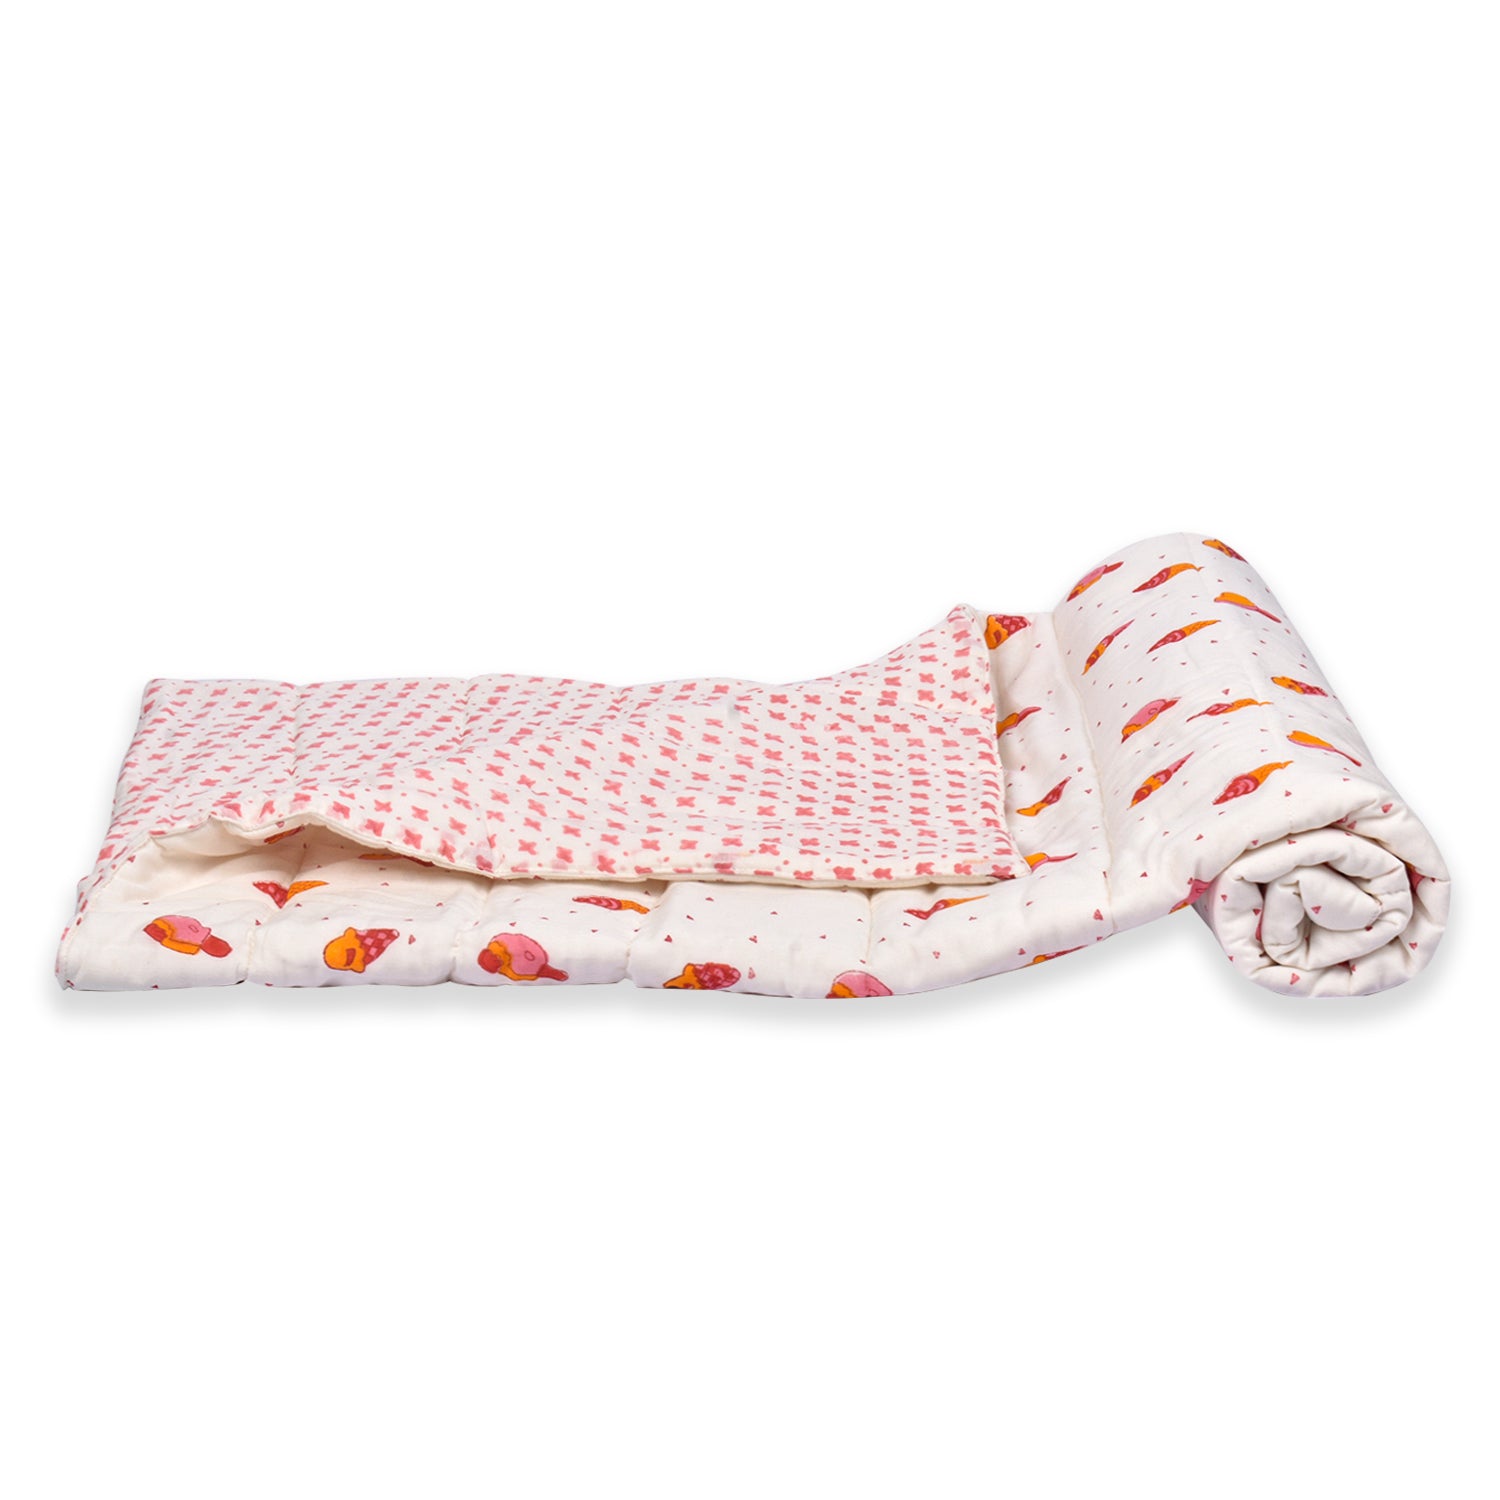 Baby Ac Quilt Blanket cum Bedspread- 0-3 Years - 100*120 cm - Icecream